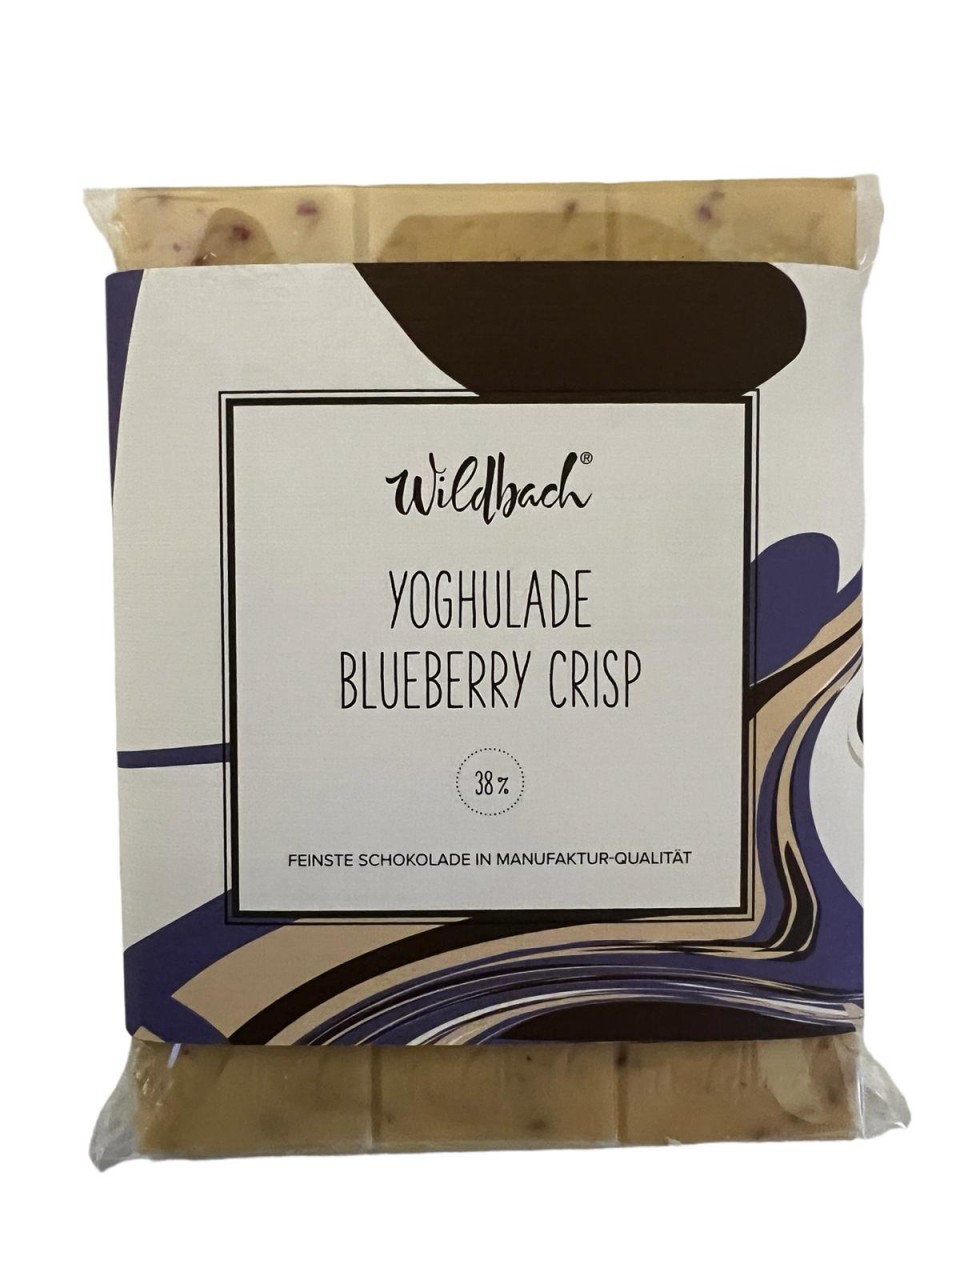 Yoghulade Blueberry Crisp 38% 70g Wildbach Schokolade